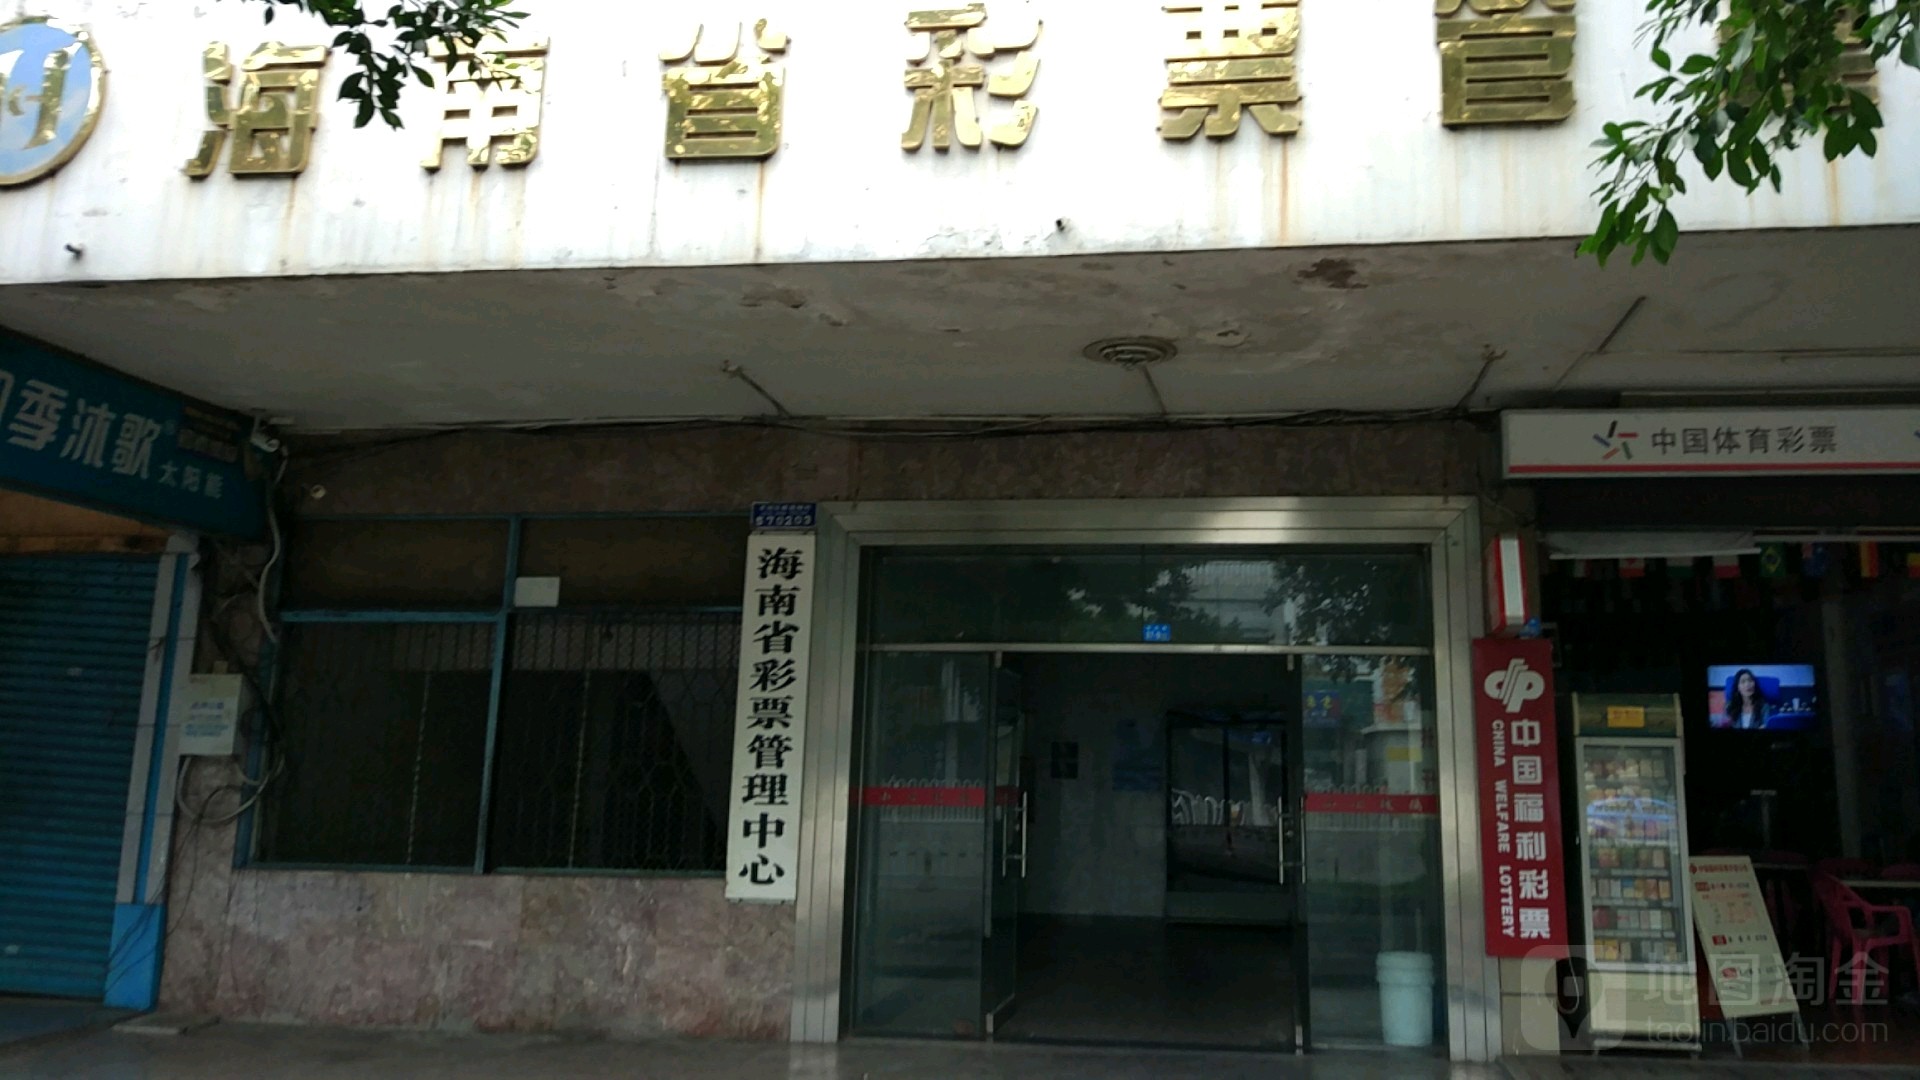 海南省彩票管理中心